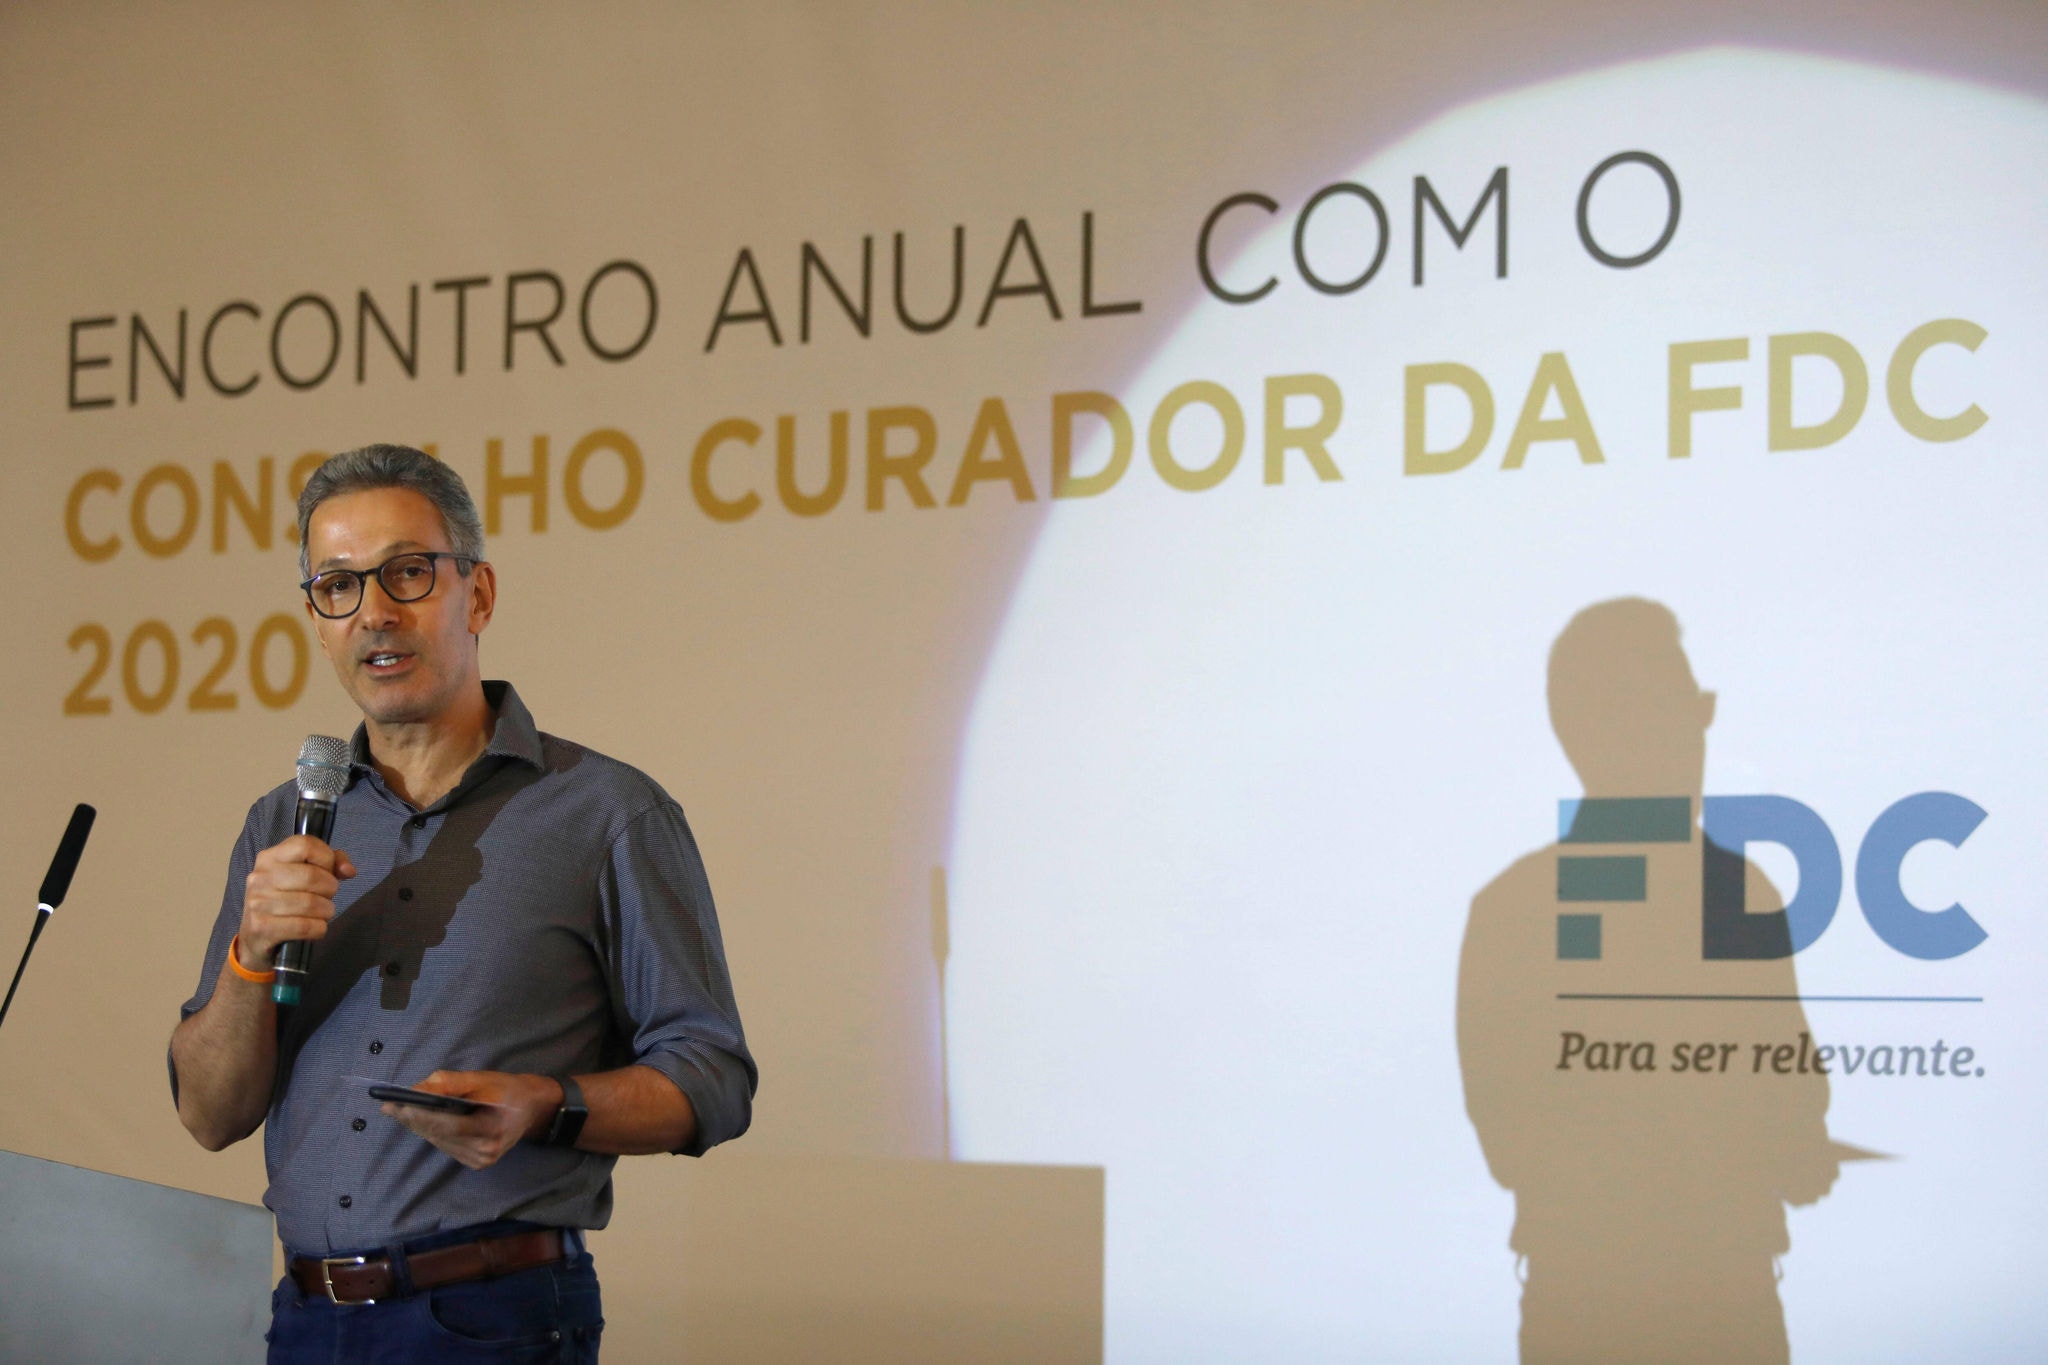 Em seu discurso no Encontro Anual do Conselho Curador da Fundação Dom Cabral, o Governador Romeu Zema (Novo) teceu elogios ao governo de Bolsonaro